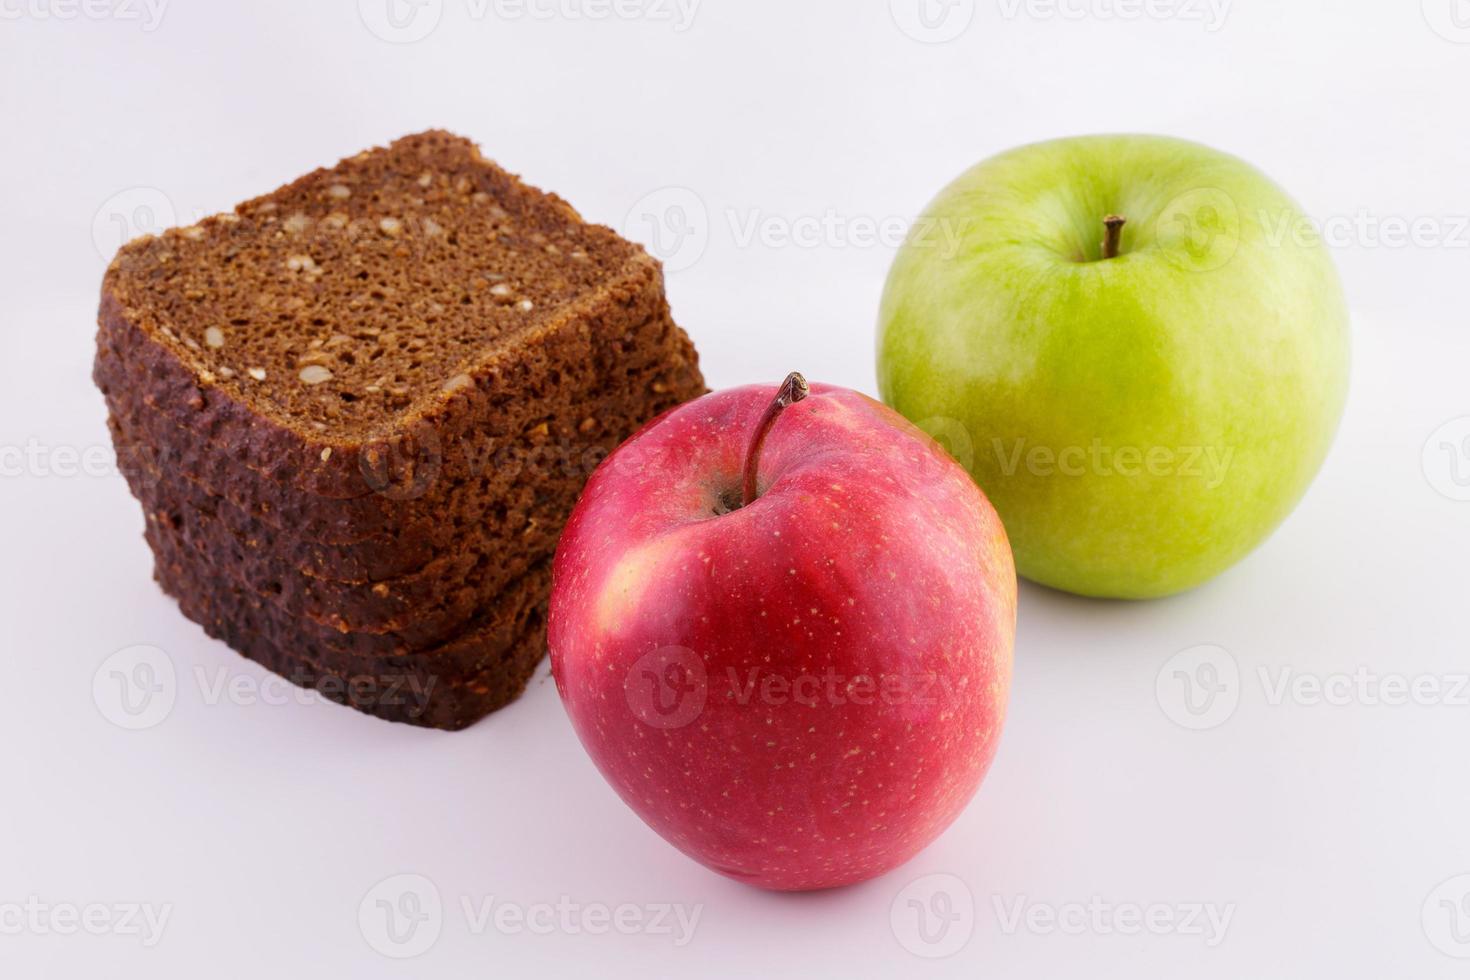 pane di segale su uno sfondo bianco con le mele foto